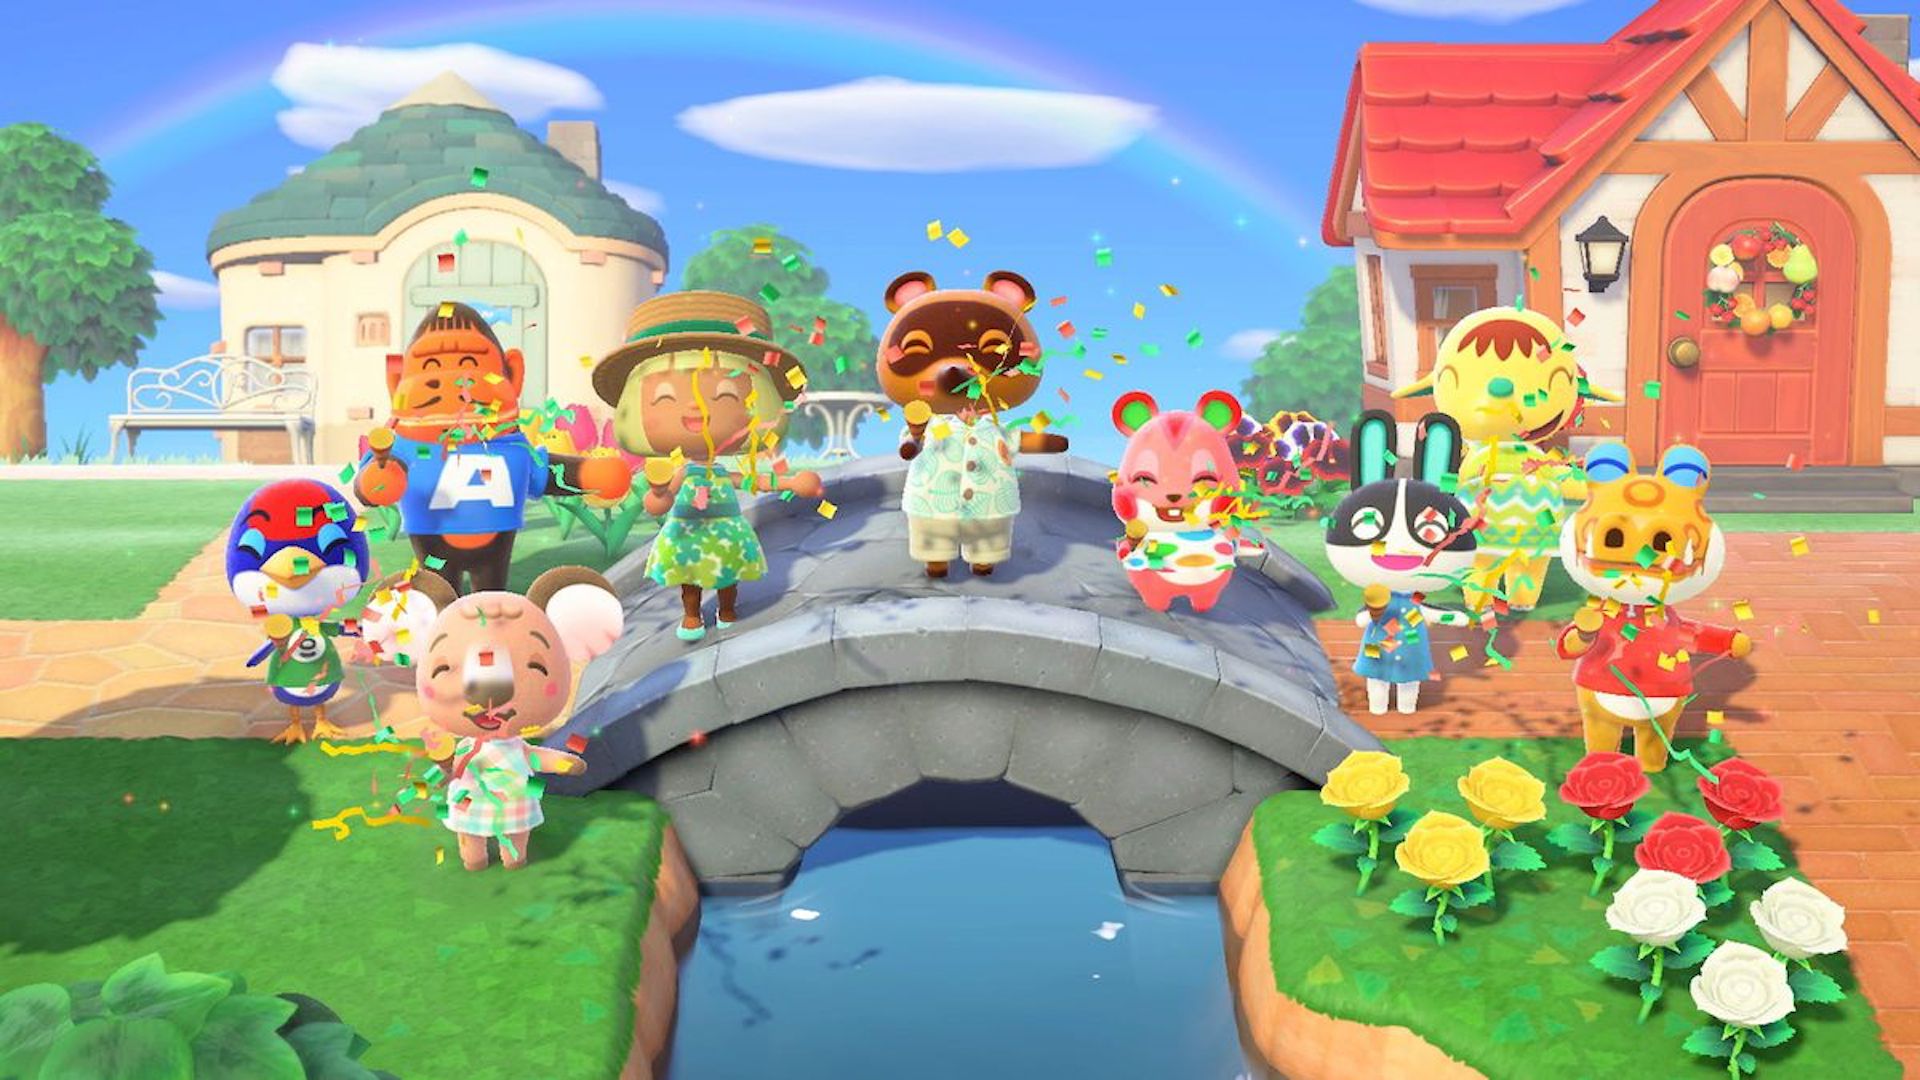 ปิดท้ายปีไปได้อย่างงดงามกับเกม Animal Crossing: New Horizons ที่เป็นเกมขายดีติดอันดับบน Amazon US และ UK ประจำปี 2020 นี้